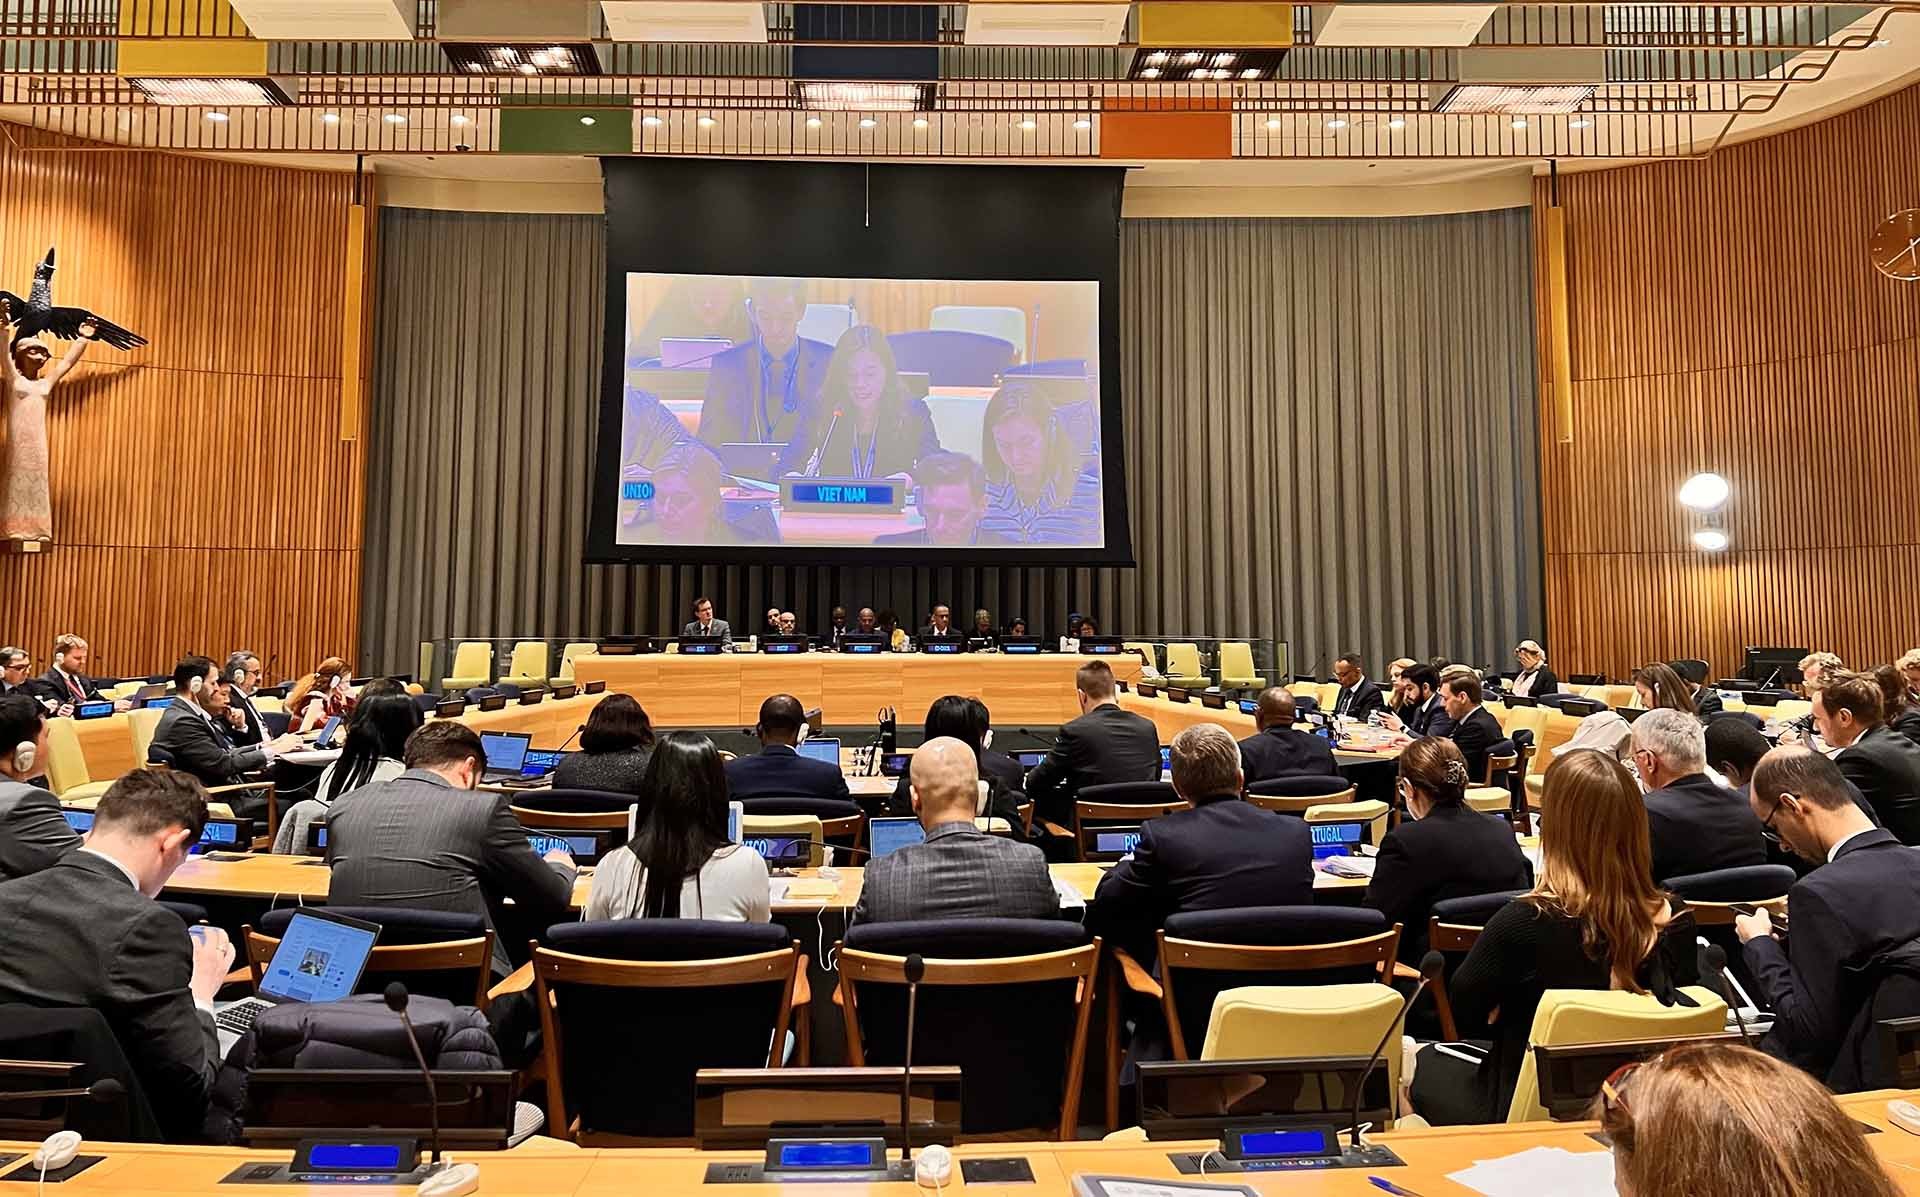 Hội đồng Bảo an Liên hợp quốc tổ chức cuộc họp với chủ đề “Bảo vệ hiệu quả hơn các dịch vụ và cơ sở hạ tầng thiết yếu về nước cho người dân trong xung đột vũ trang”.